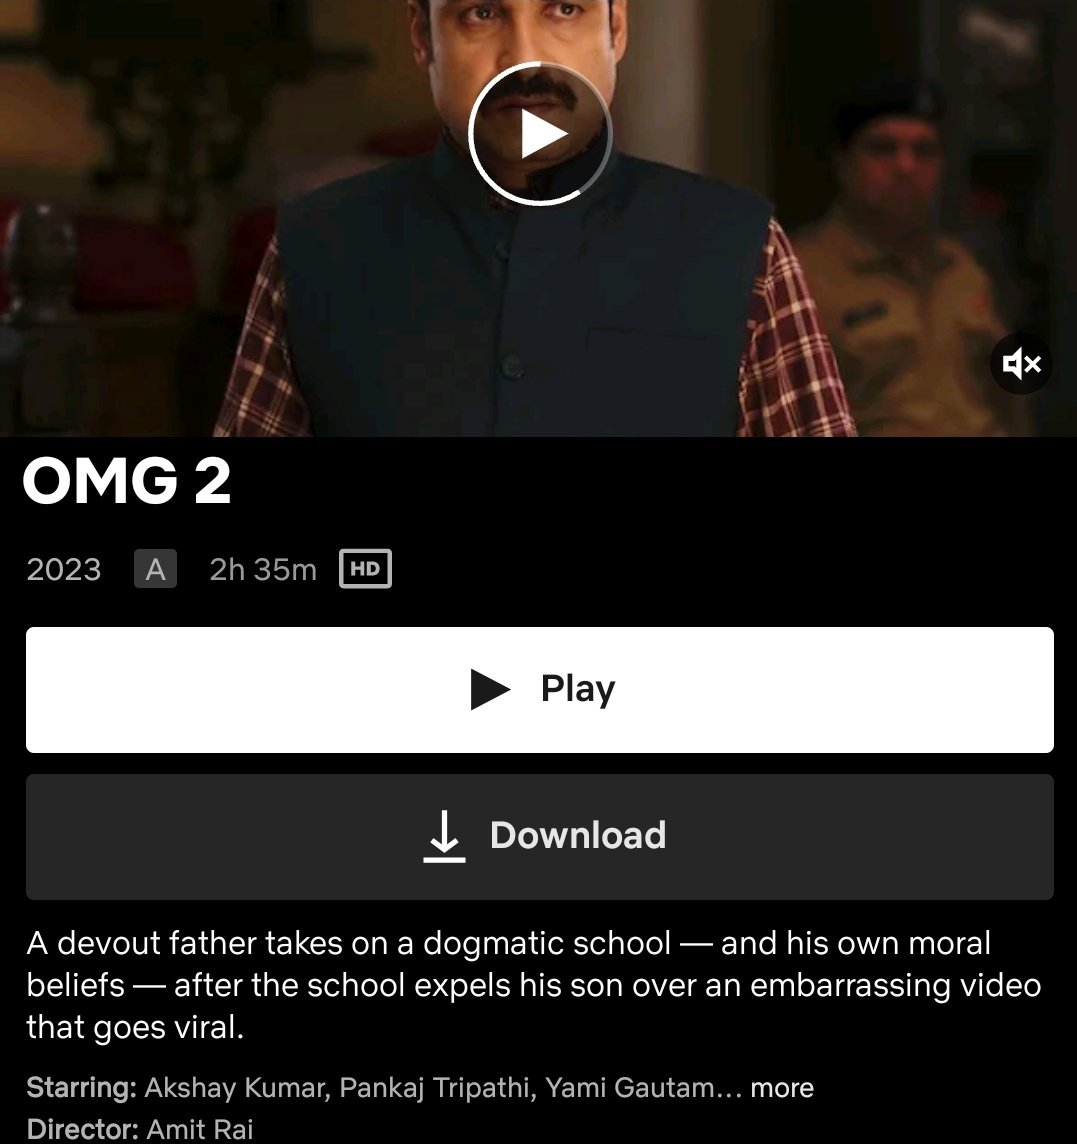 #OMG2 OTT RELEASE NOW TELUGU LANGUAGE @Netflix_INSouth @NetflixIndia